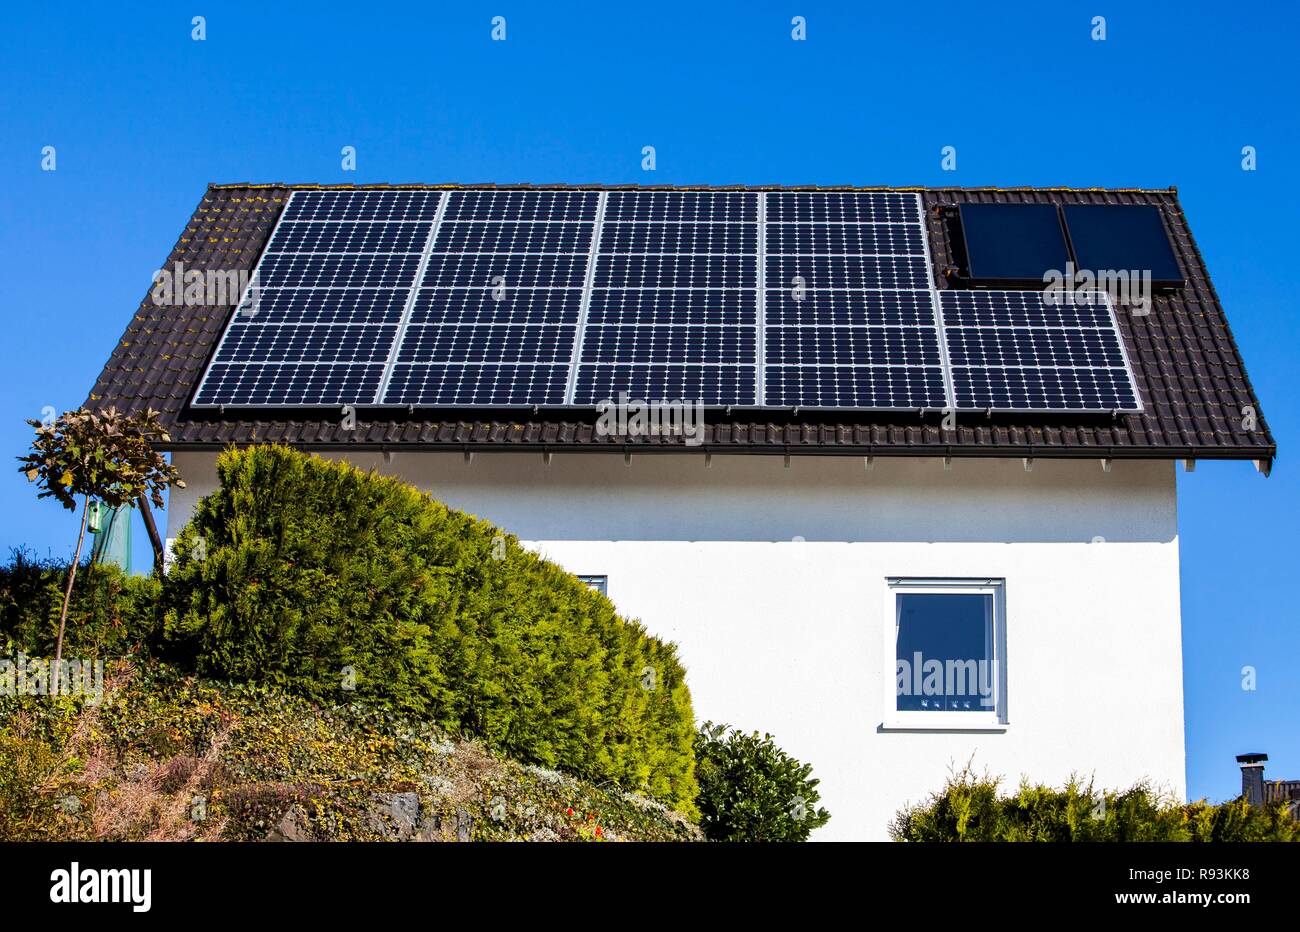 Dach eines Wohnhauses mit Solarzellen zur Stromerzeugung und thermische  Solaranlagen für Warmwasser Stockfotografie - Alamy